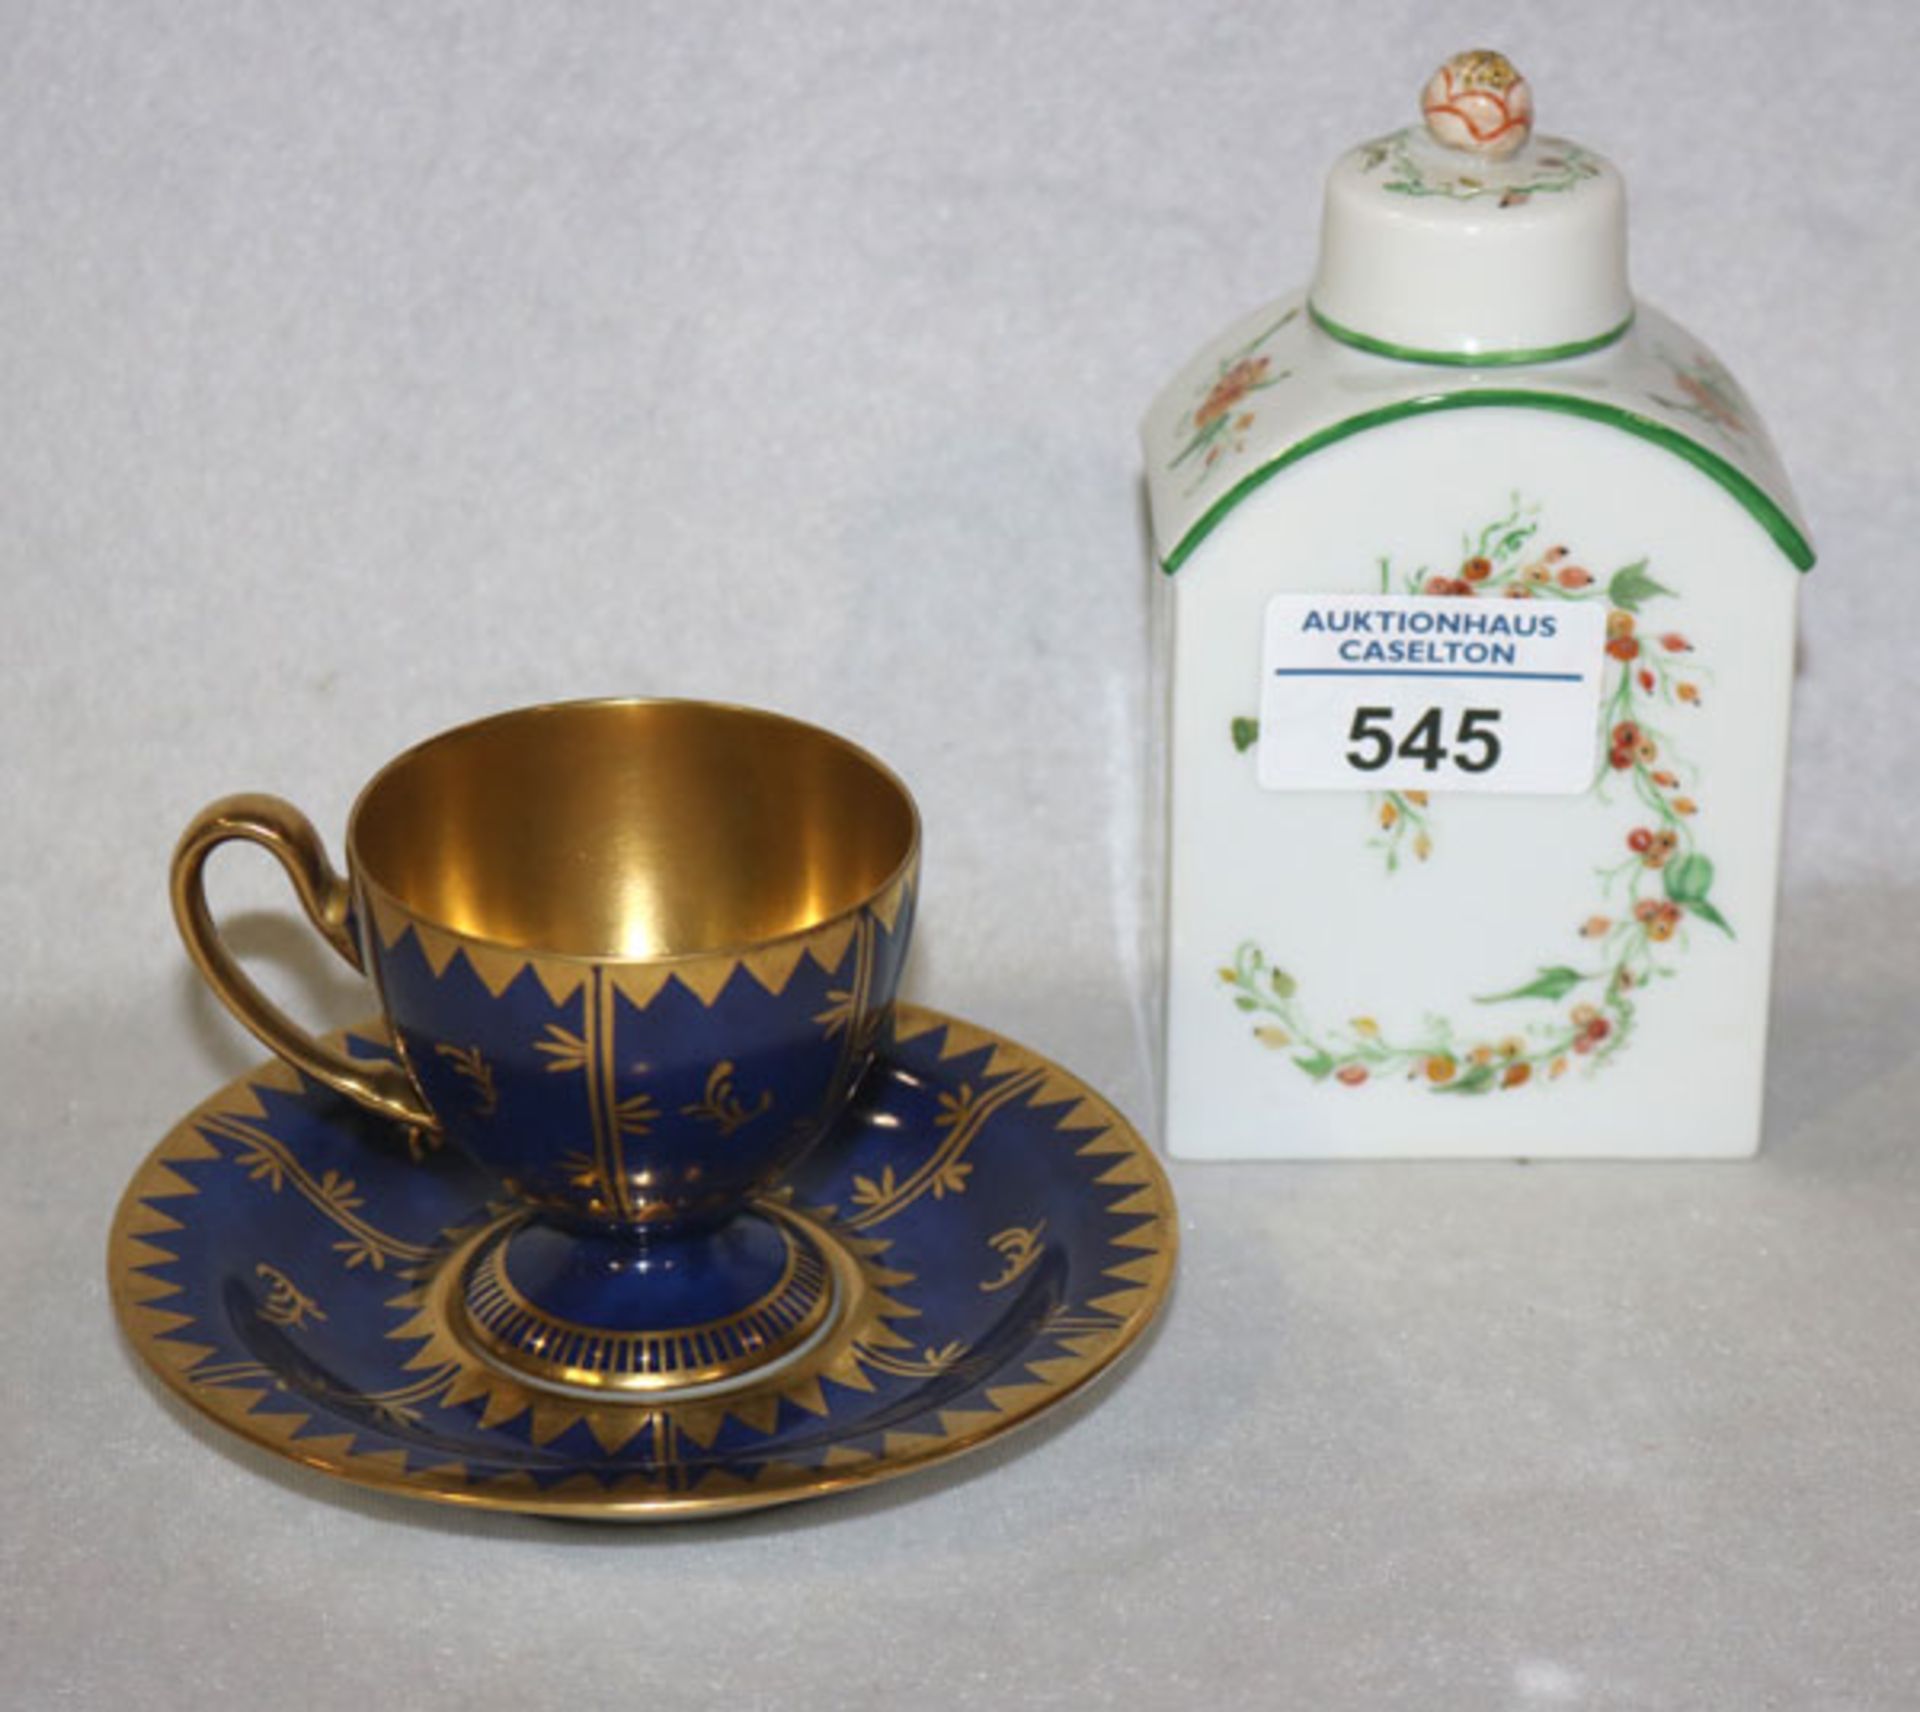 Fürstenberg Teedose mit Sanddorn-Dekor, H 13 cm, und Mokkatasse, blau mit Golddekor, handbemalt, gut